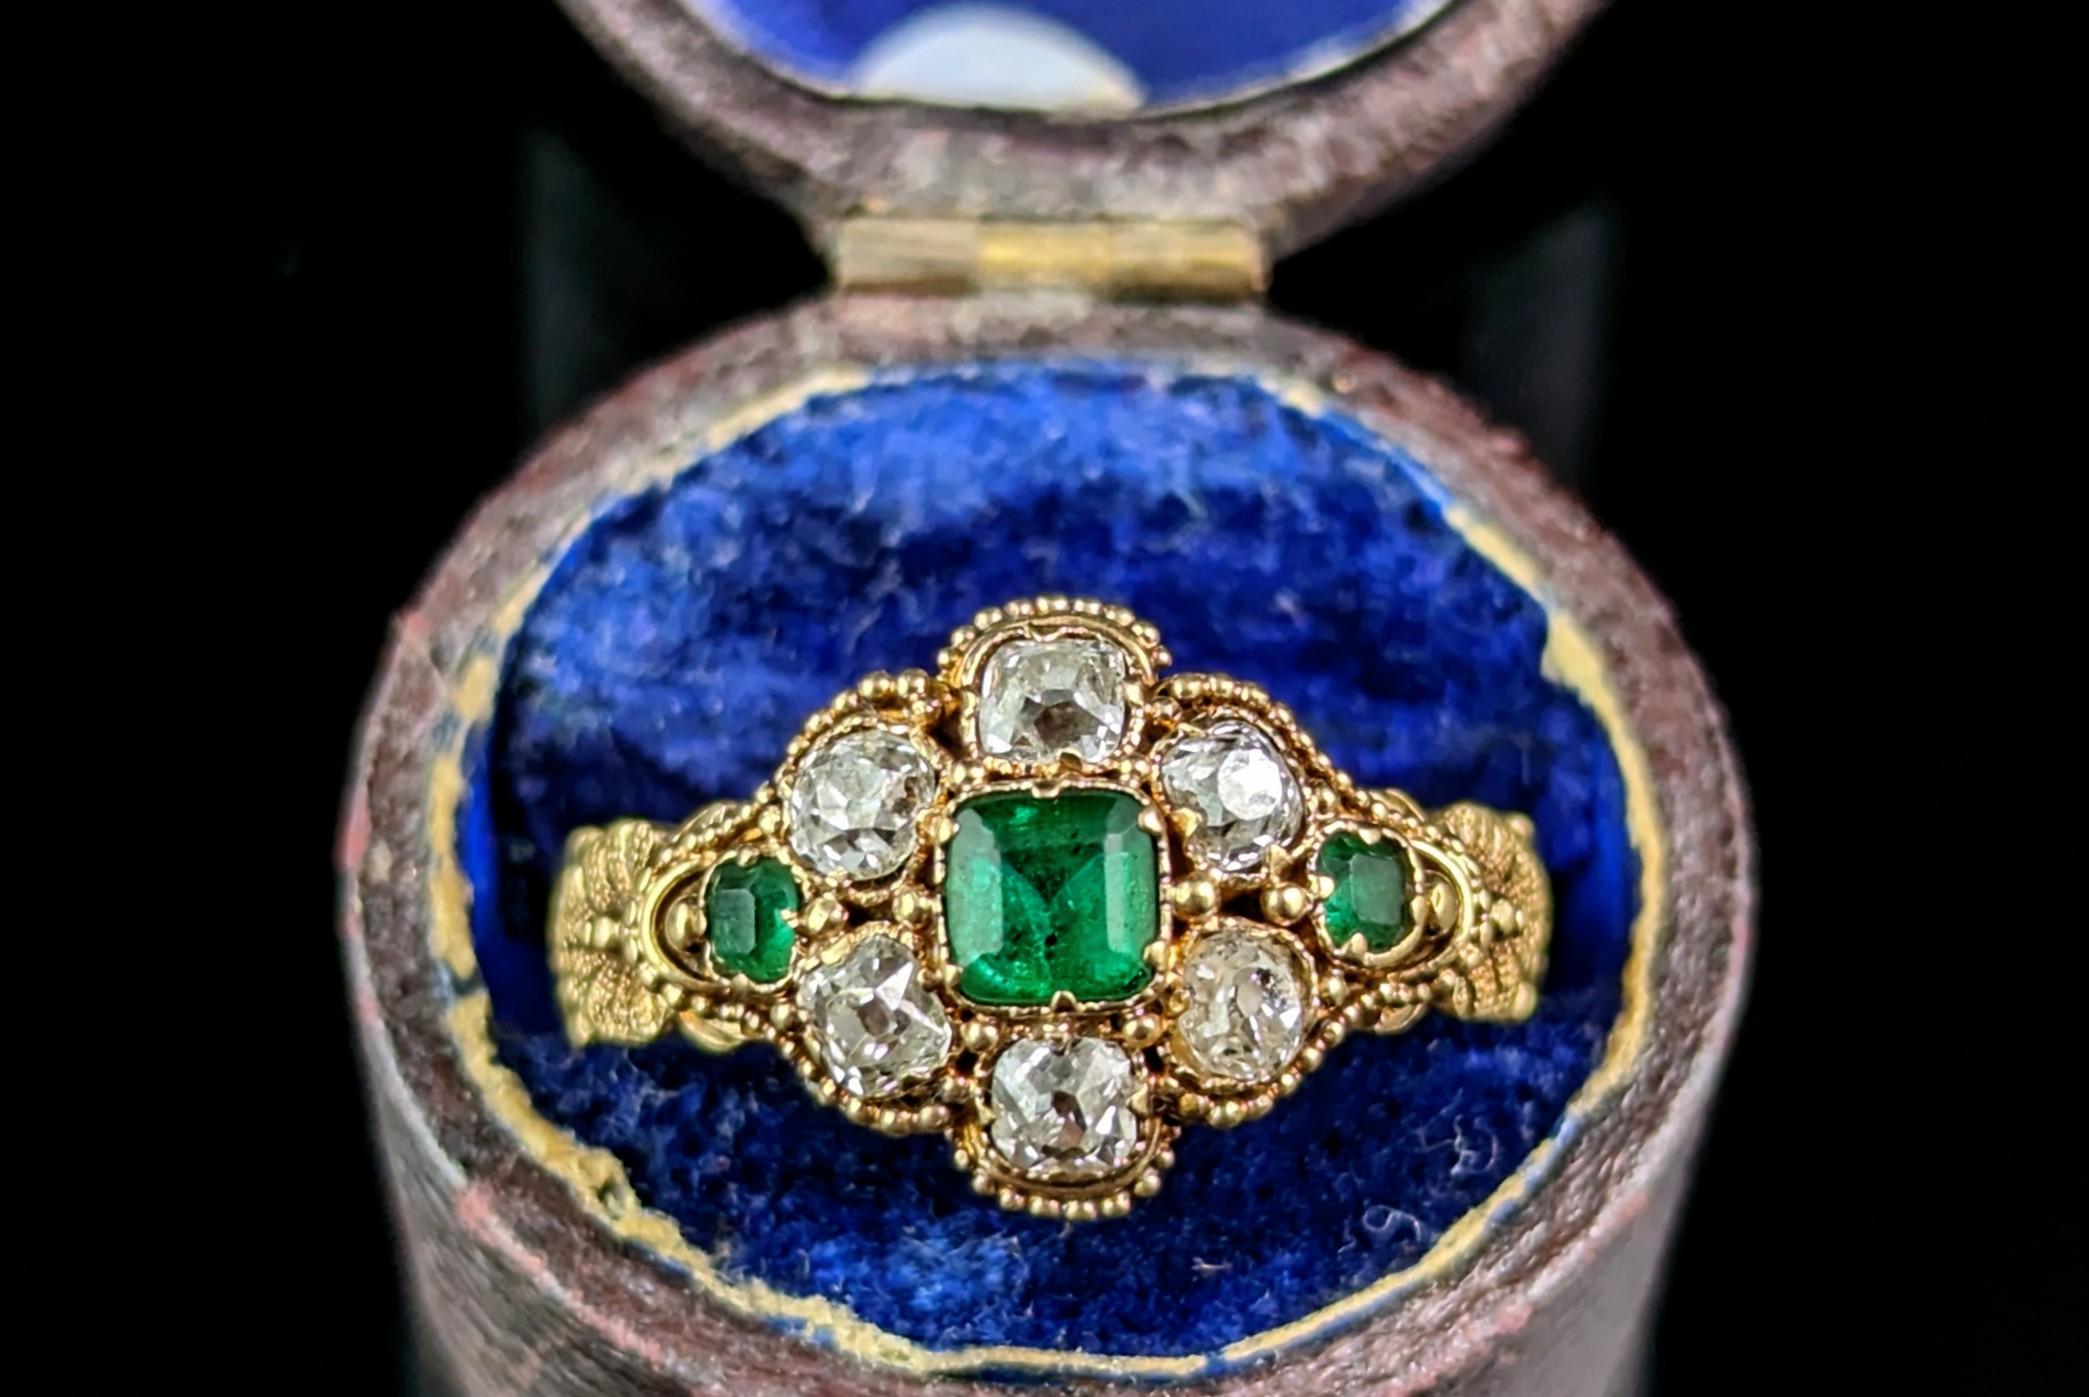 Dieser antike Ring mit Smaragd und Diamanten ist ein echter Hingucker und strahlt königliche Schönheit und Luxus aus.

Dieser tadellose Ring ist aus reichem, butterweichem 18-karätigem Gold mit einem leicht abgeschrägten Band und den schönsten